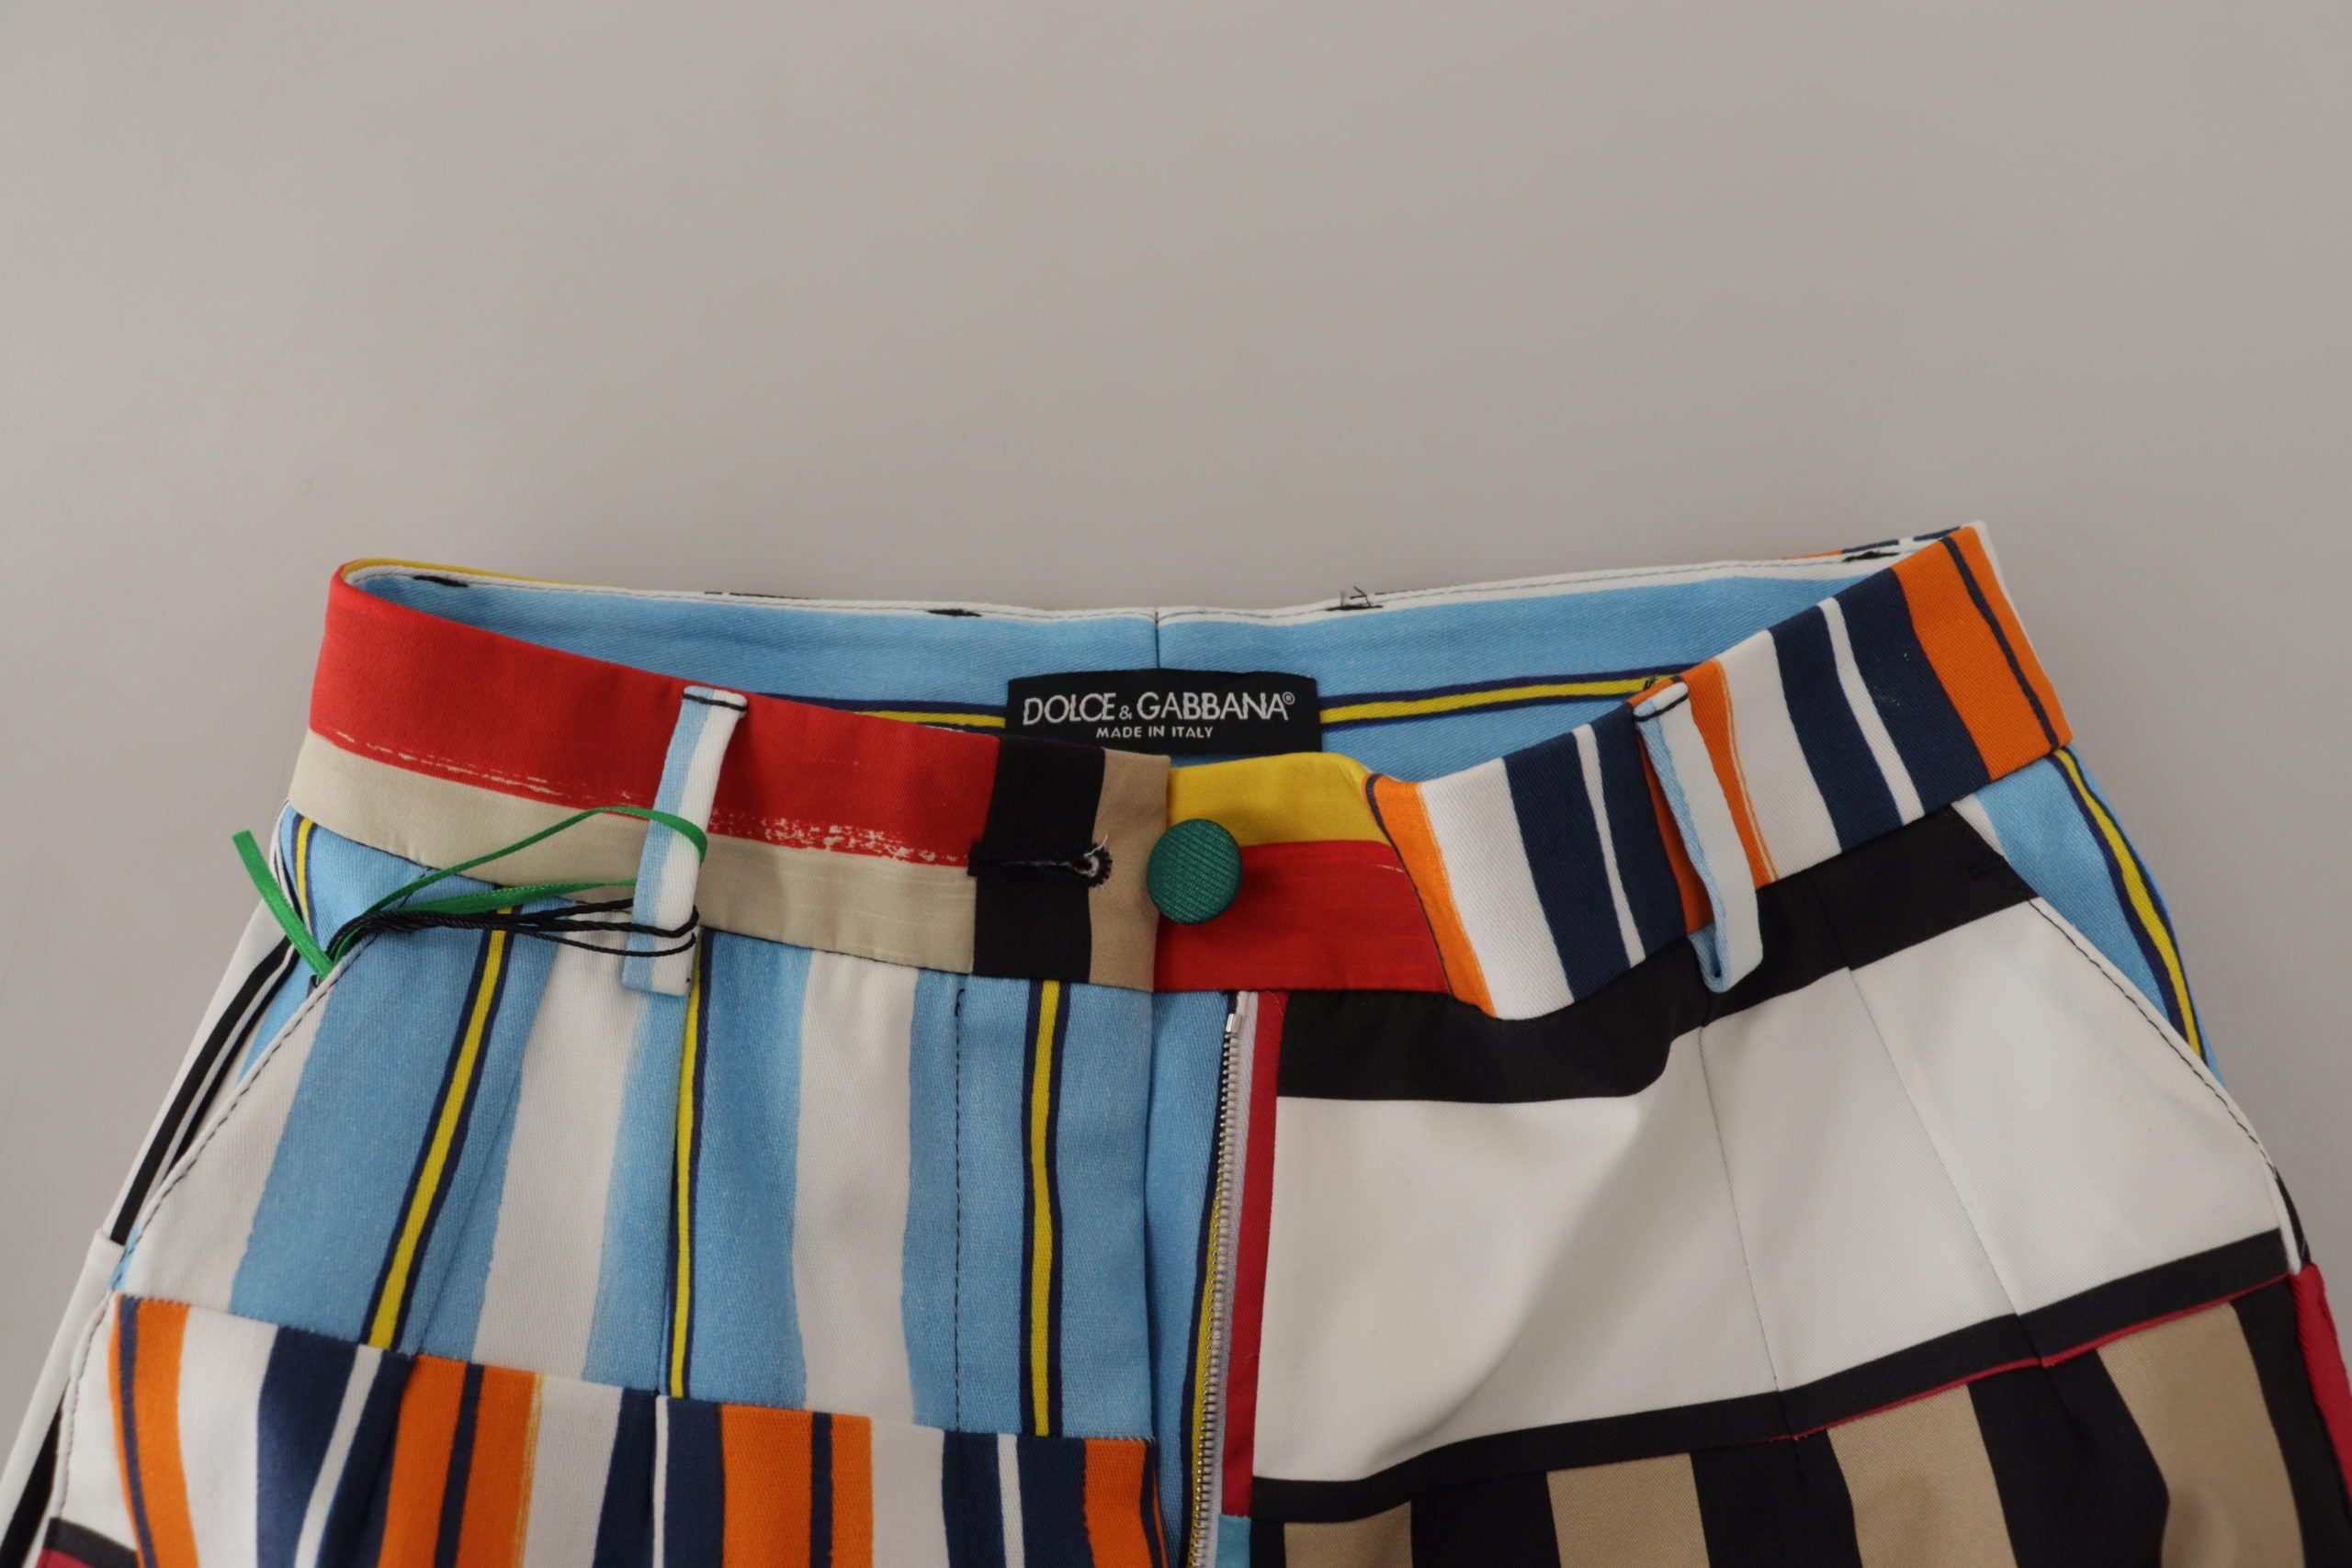 Multicolor Striped High Waist Cotton Pants